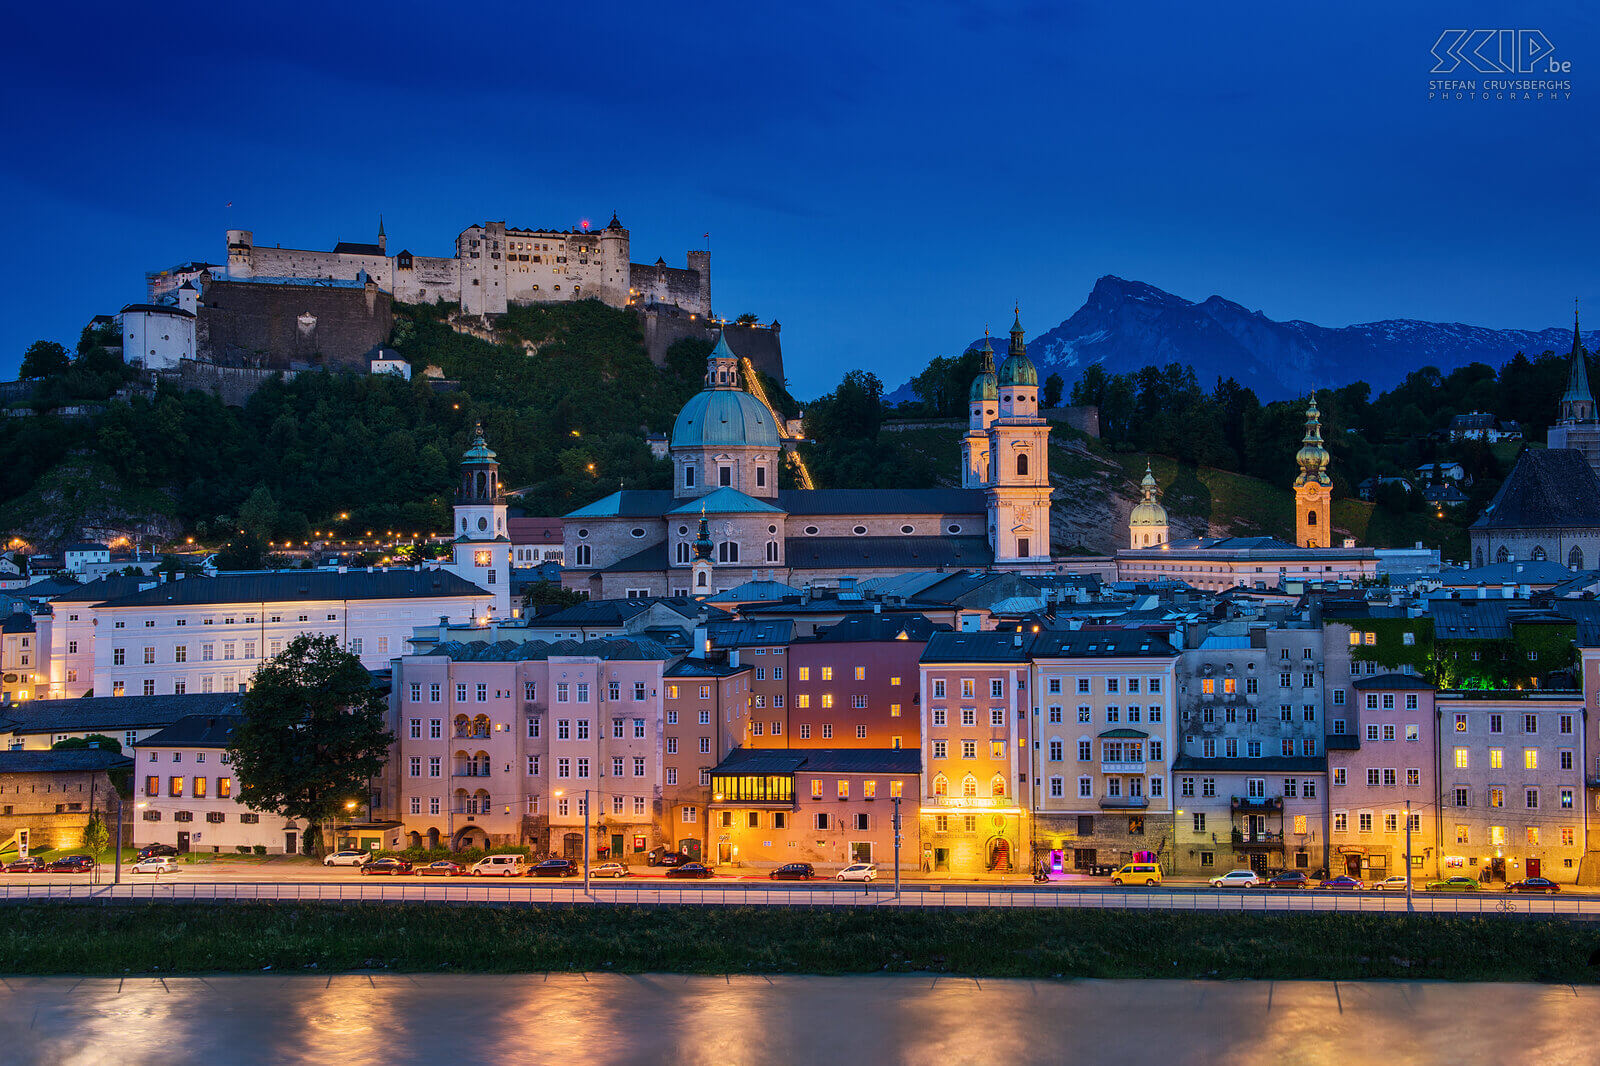 Oostenrijk - Salzburg - By night Zicht op de rivier, het oude centrum van Salzburg en de Festung Hohensalzburg. Deze foto is genomen vanaf de Kapuzinerberg. Stefan Cruysberghs